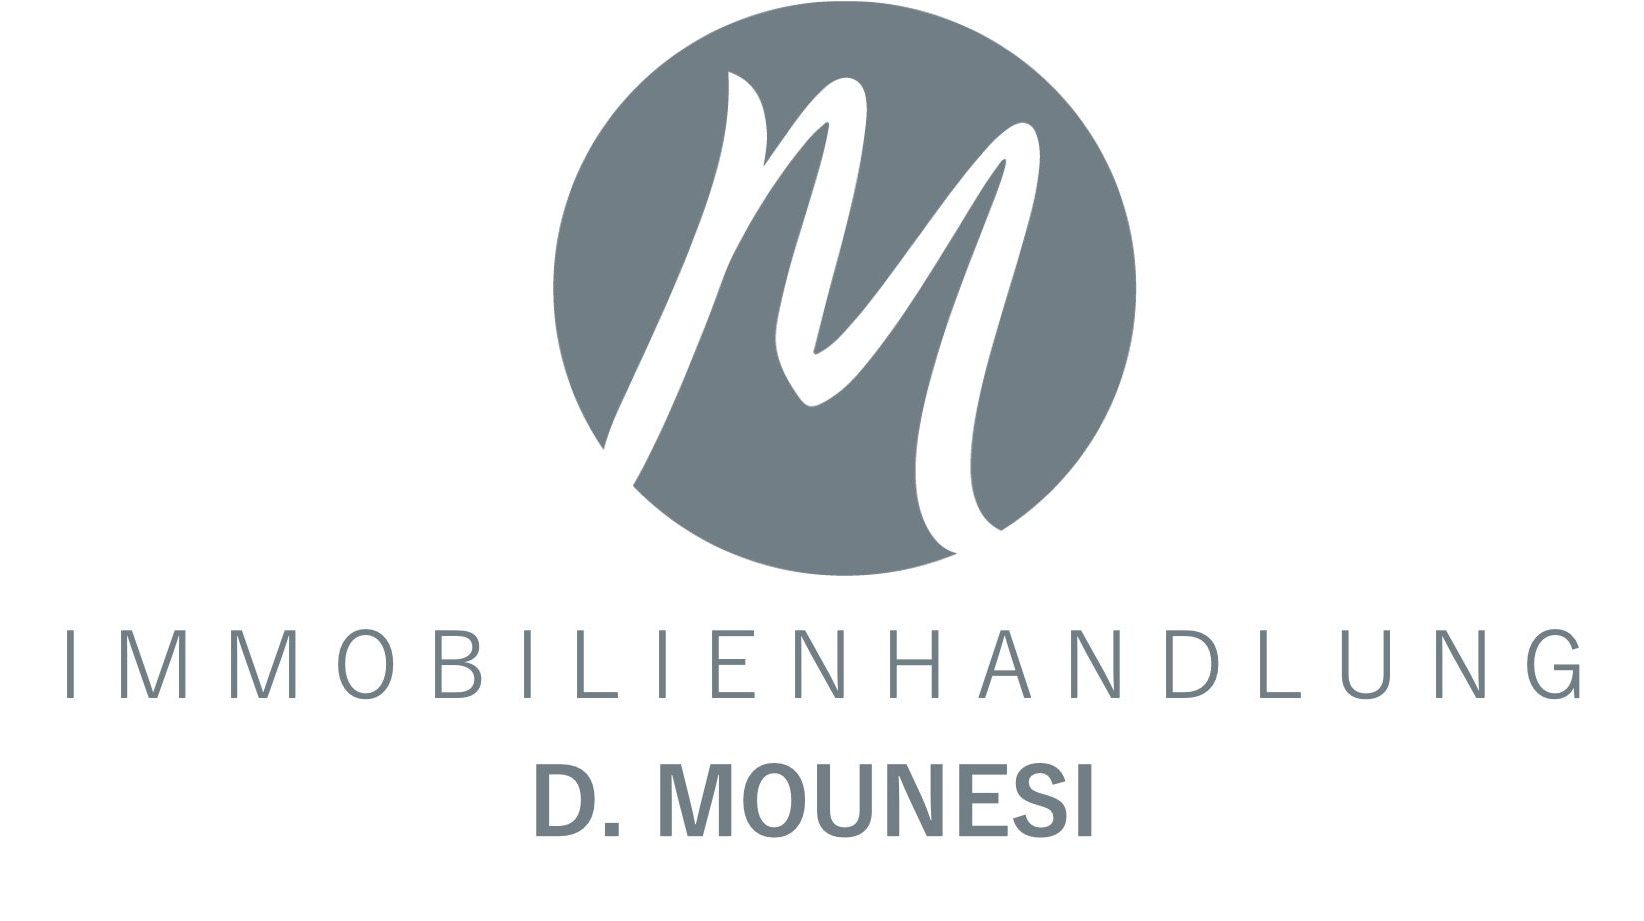 Immobilienhandlung D. Mounesi